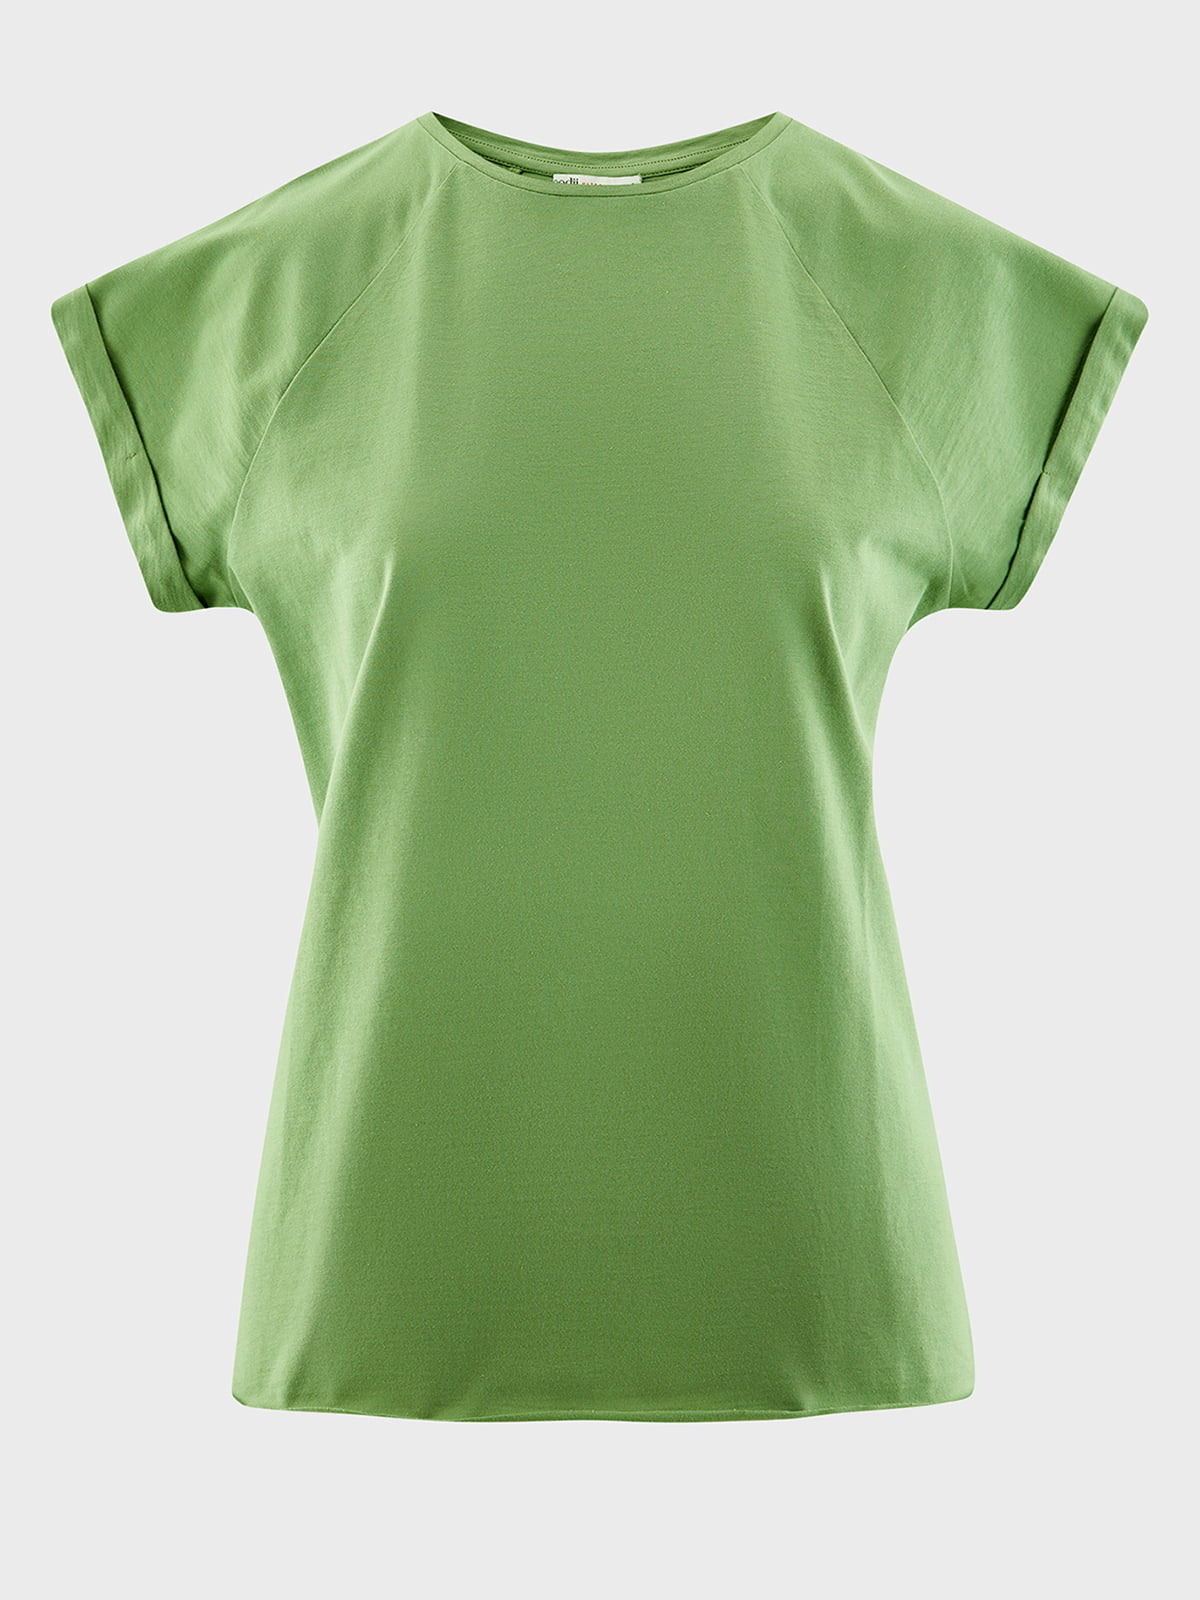 Где купить базовую футболку. Зелёная футболка женская. Футболка зеленого цвета женская. Футболка женская Базовая зеленая. Зеленая майка.